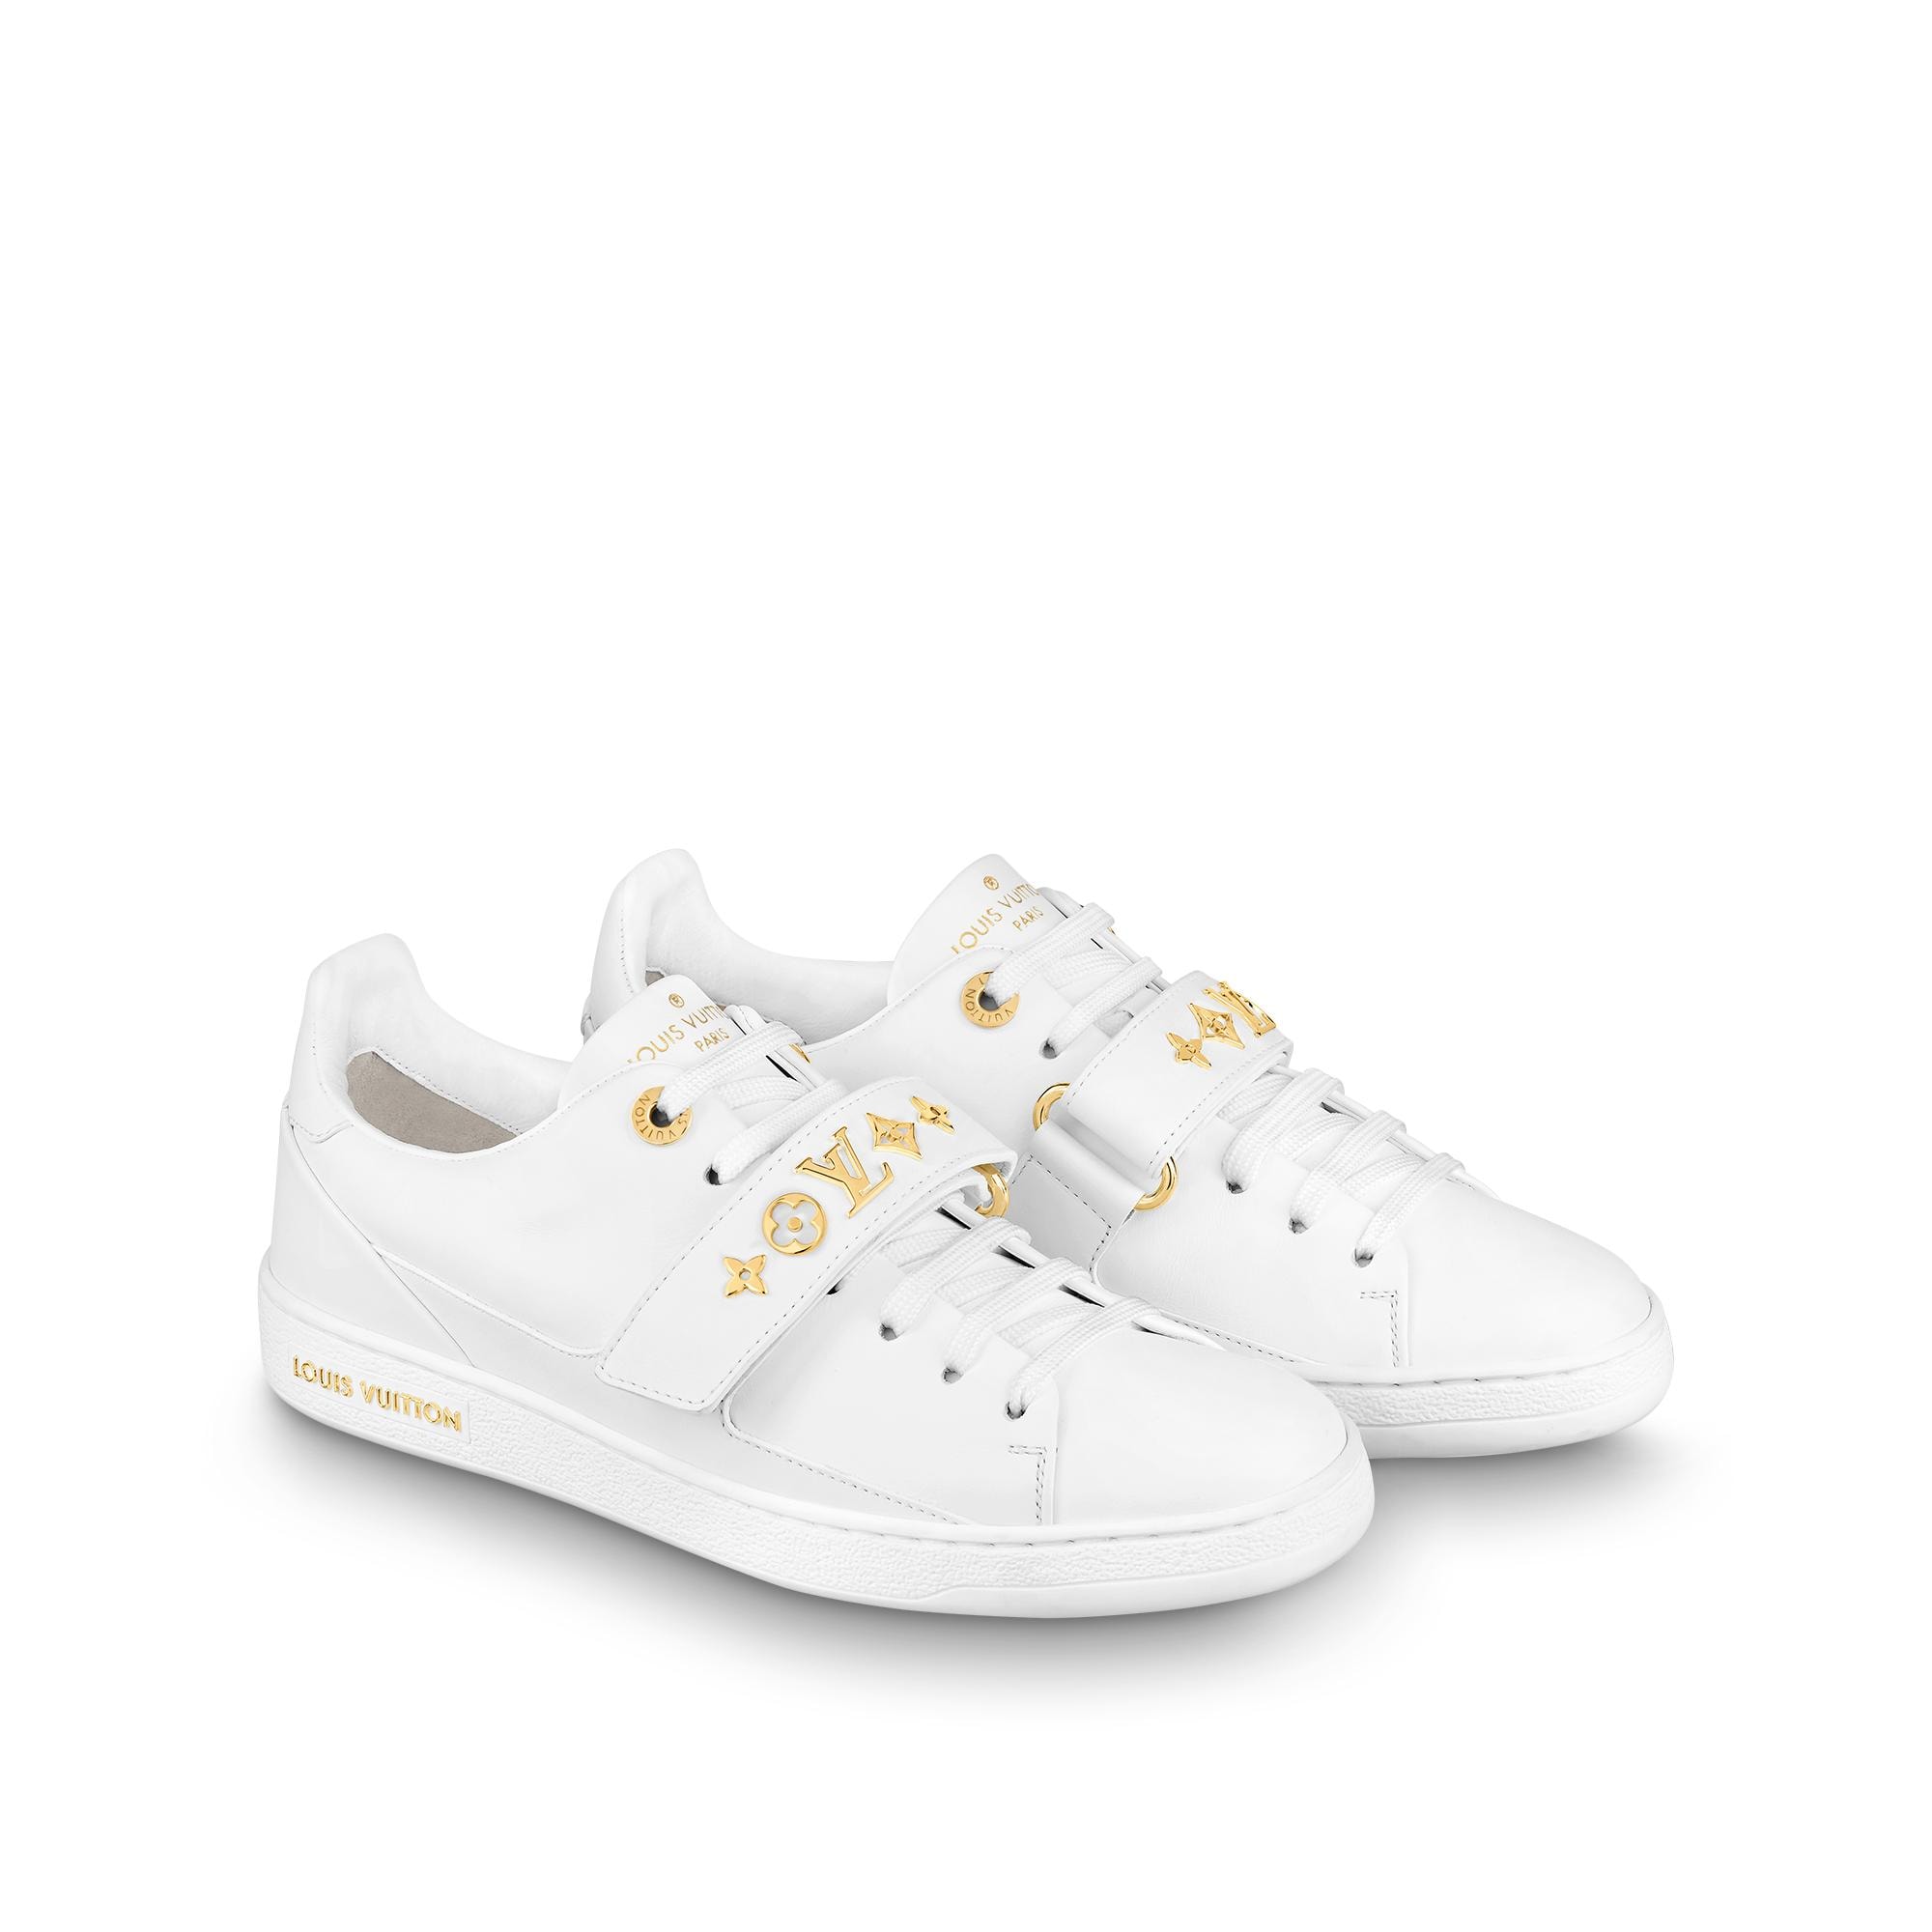 Louis Vuitton FRONTROW Sneaker White. Size 38.0